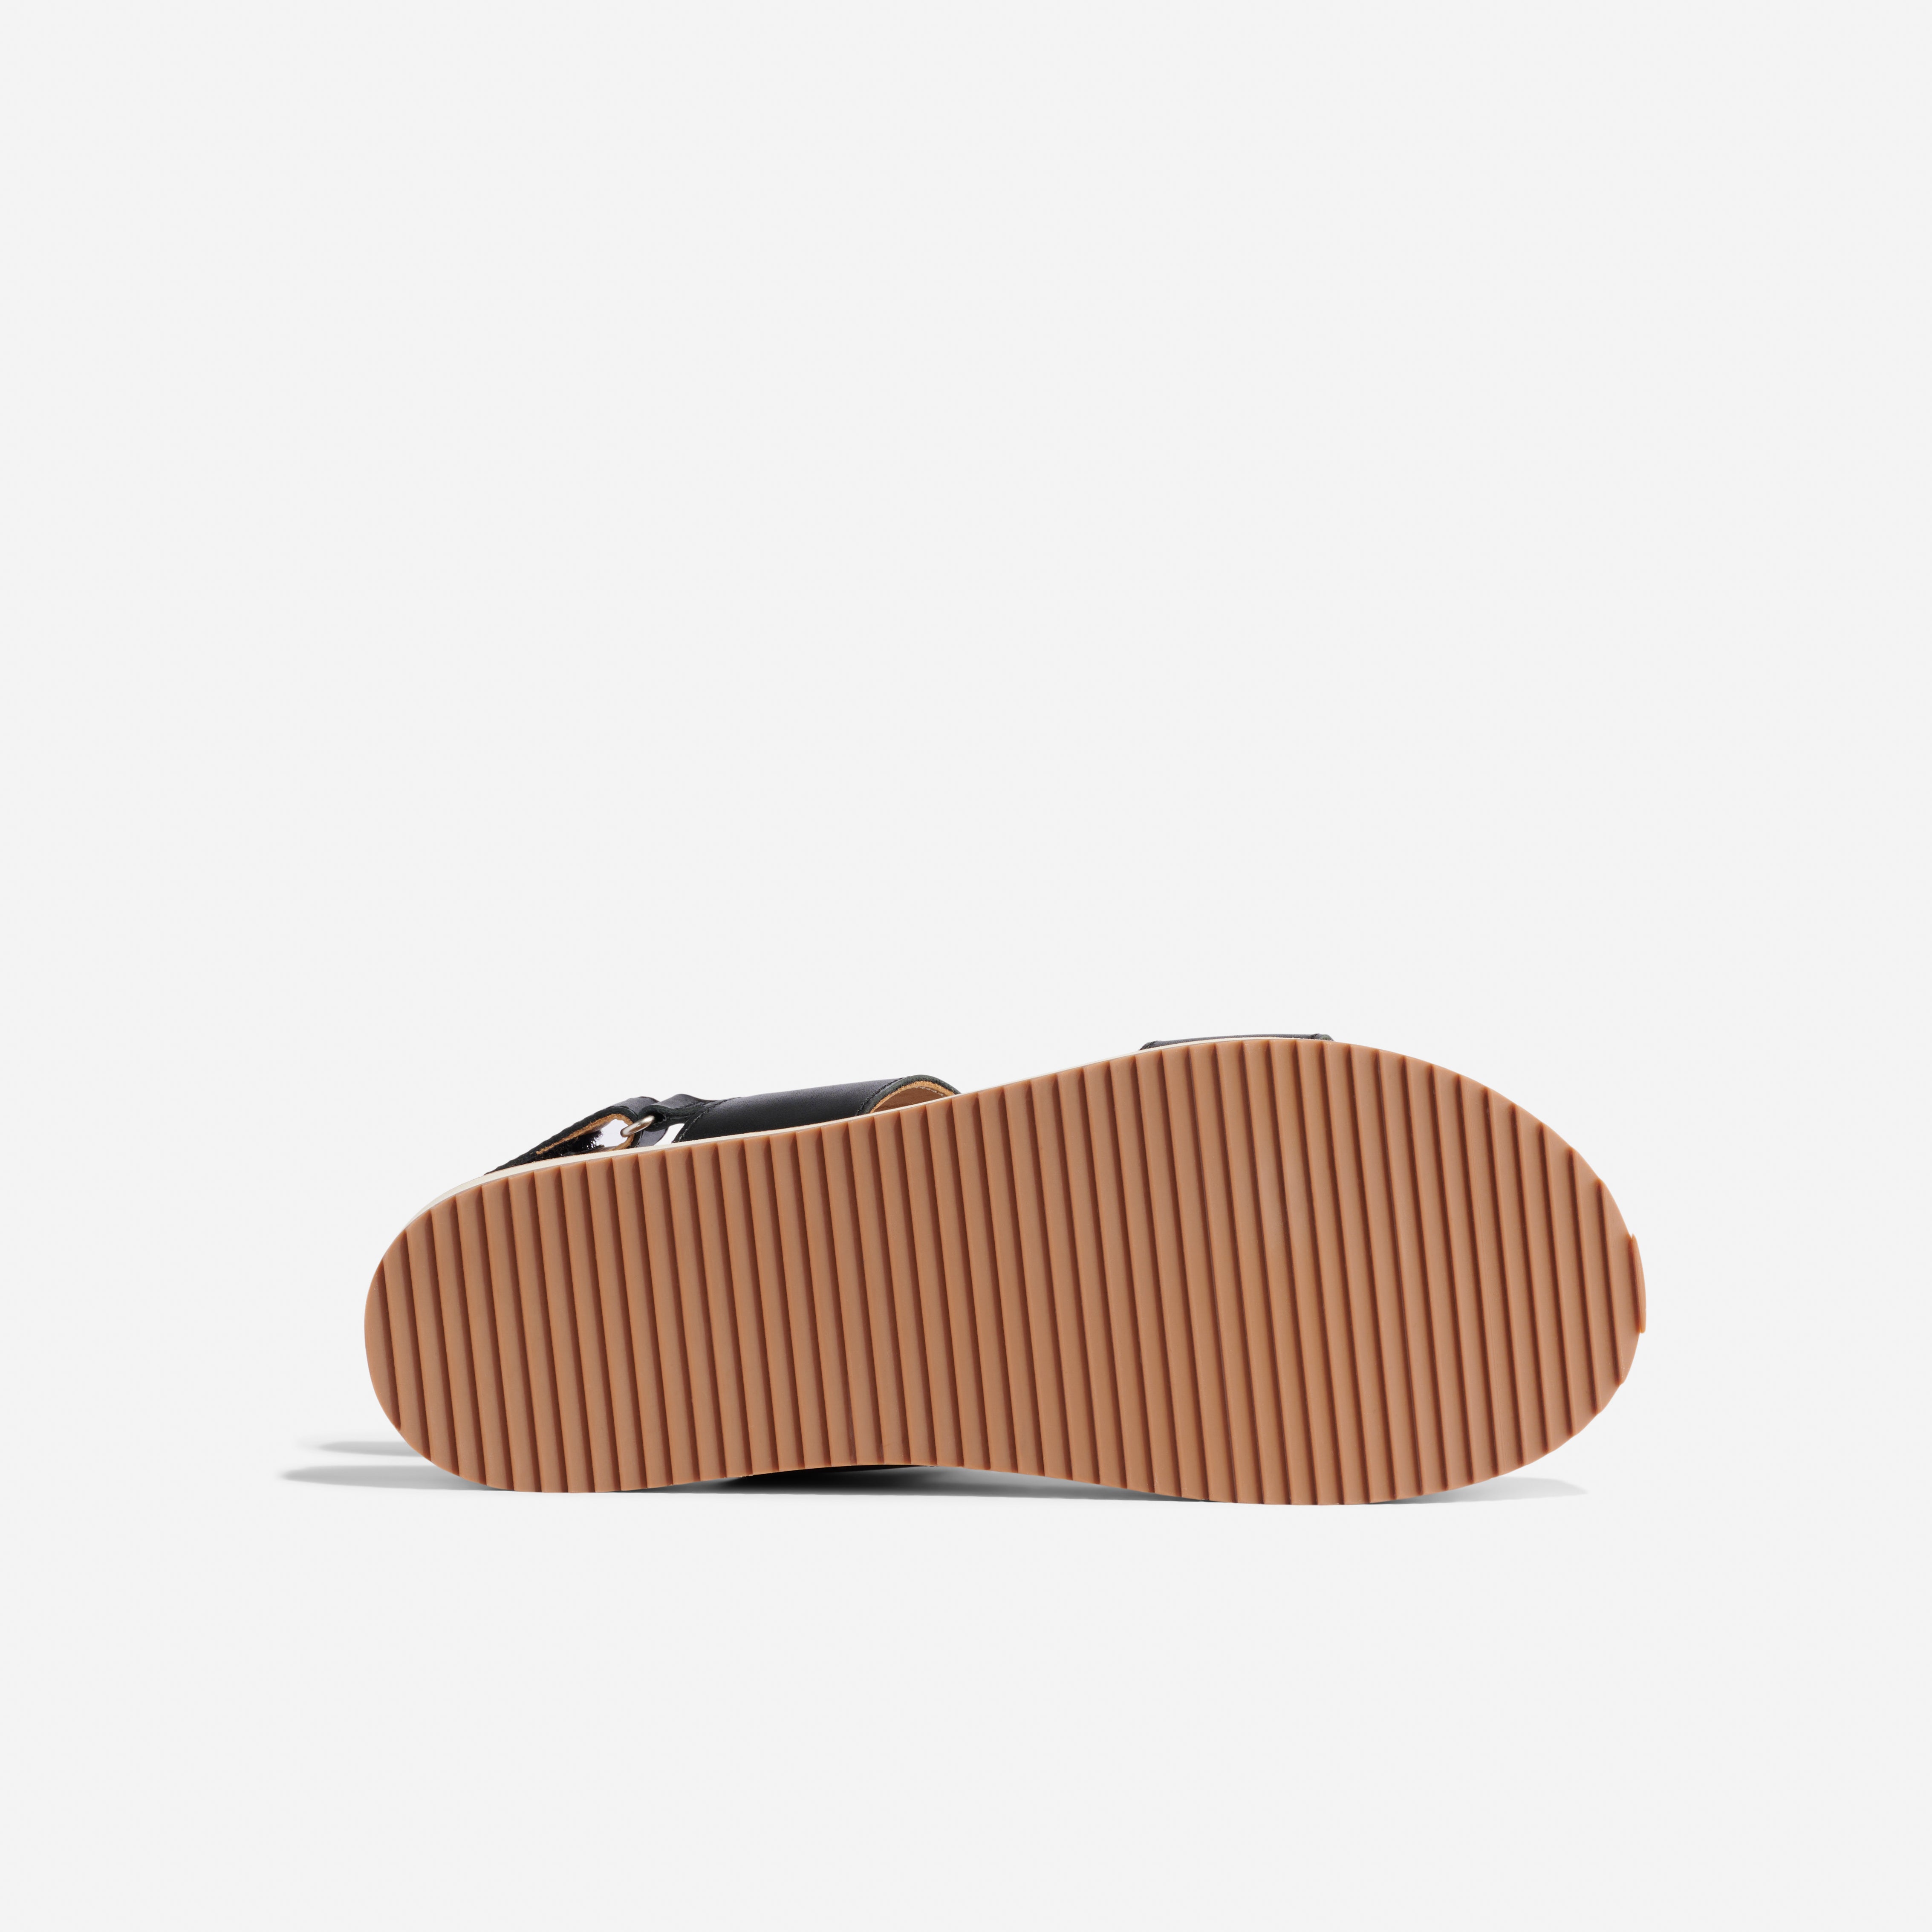 Go-To Flatform Sandal 2.0 Black